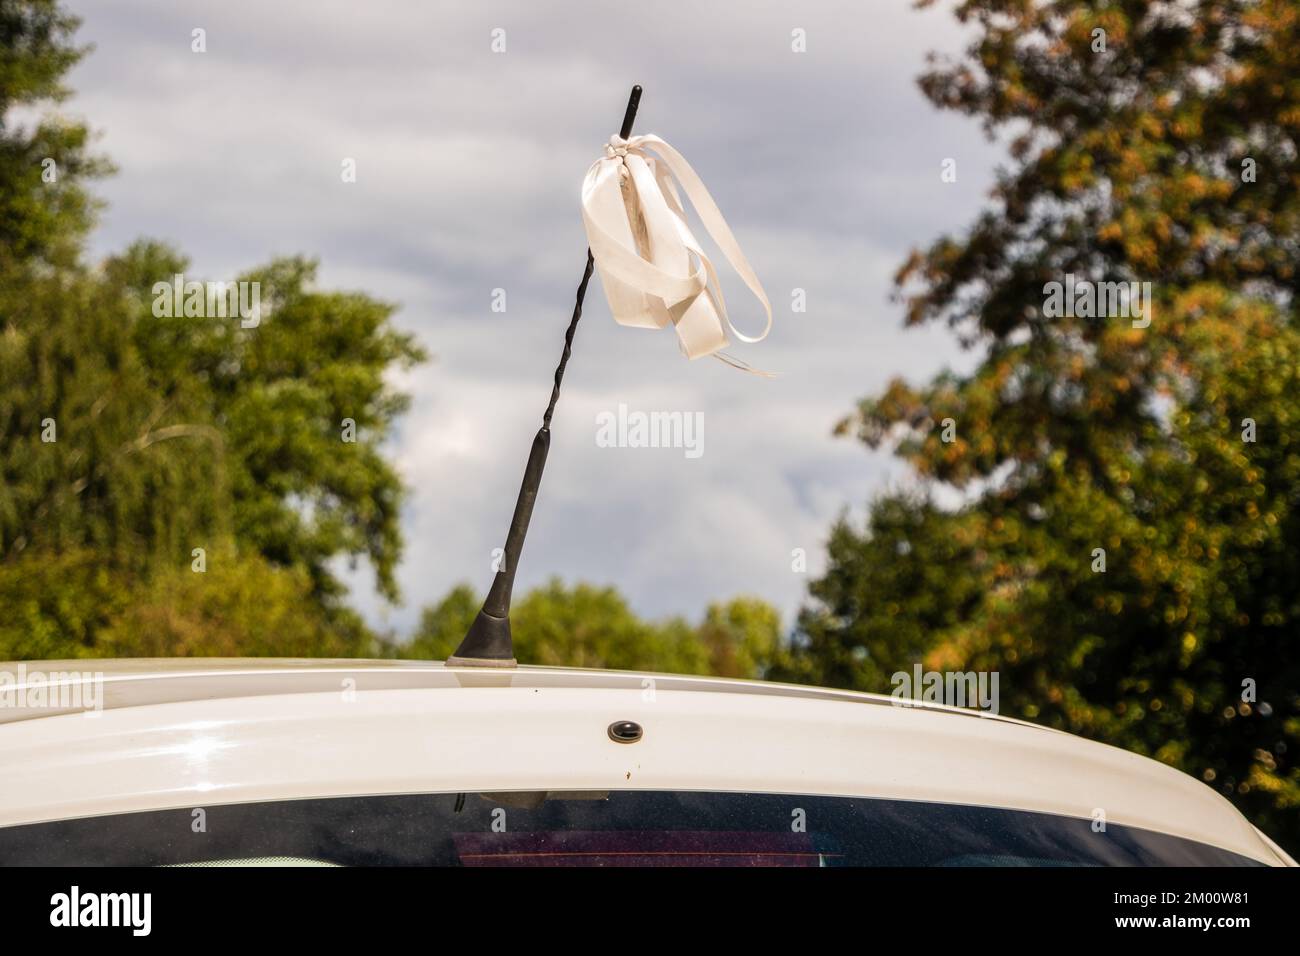 Das Hochzeitssymbol auf einer Autoantenne Stockfotografie - Alamy